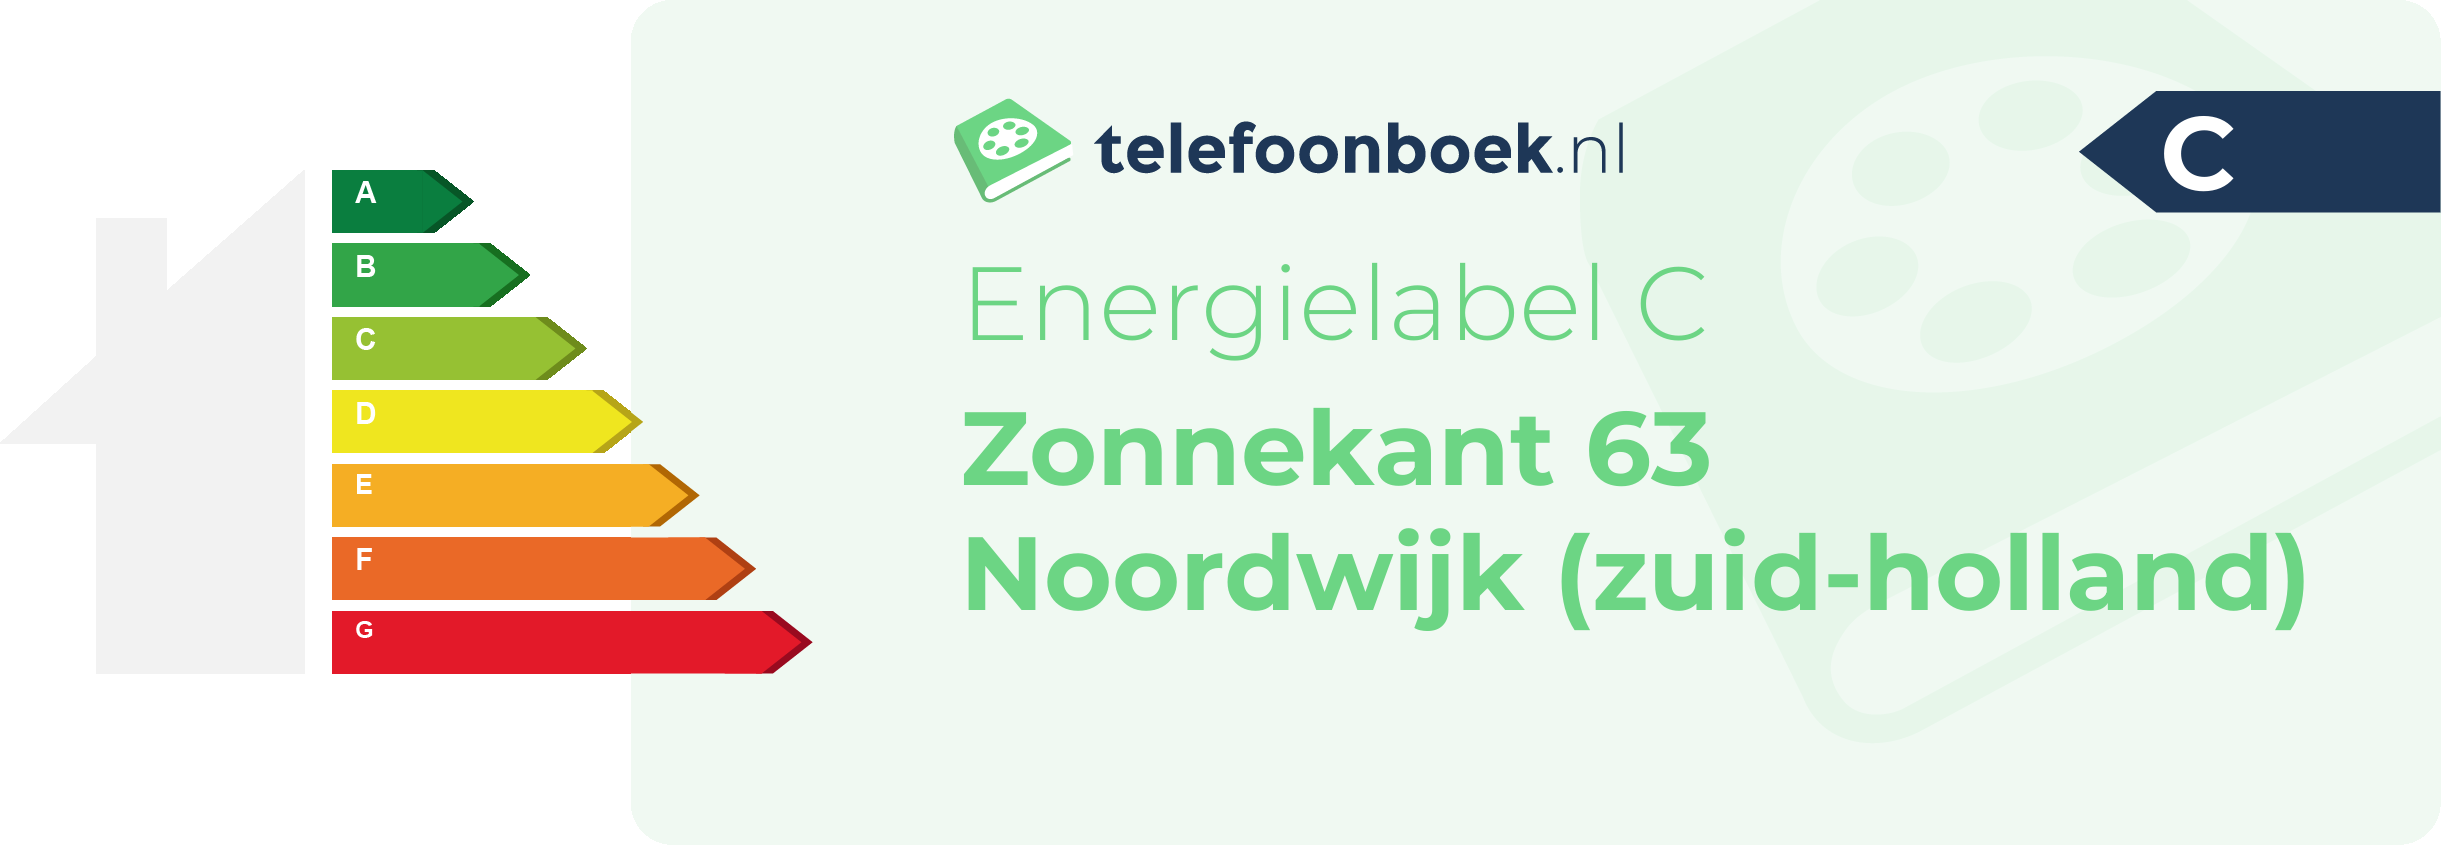 Energielabel Zonnekant 63 Noordwijk (Zuid-Holland)